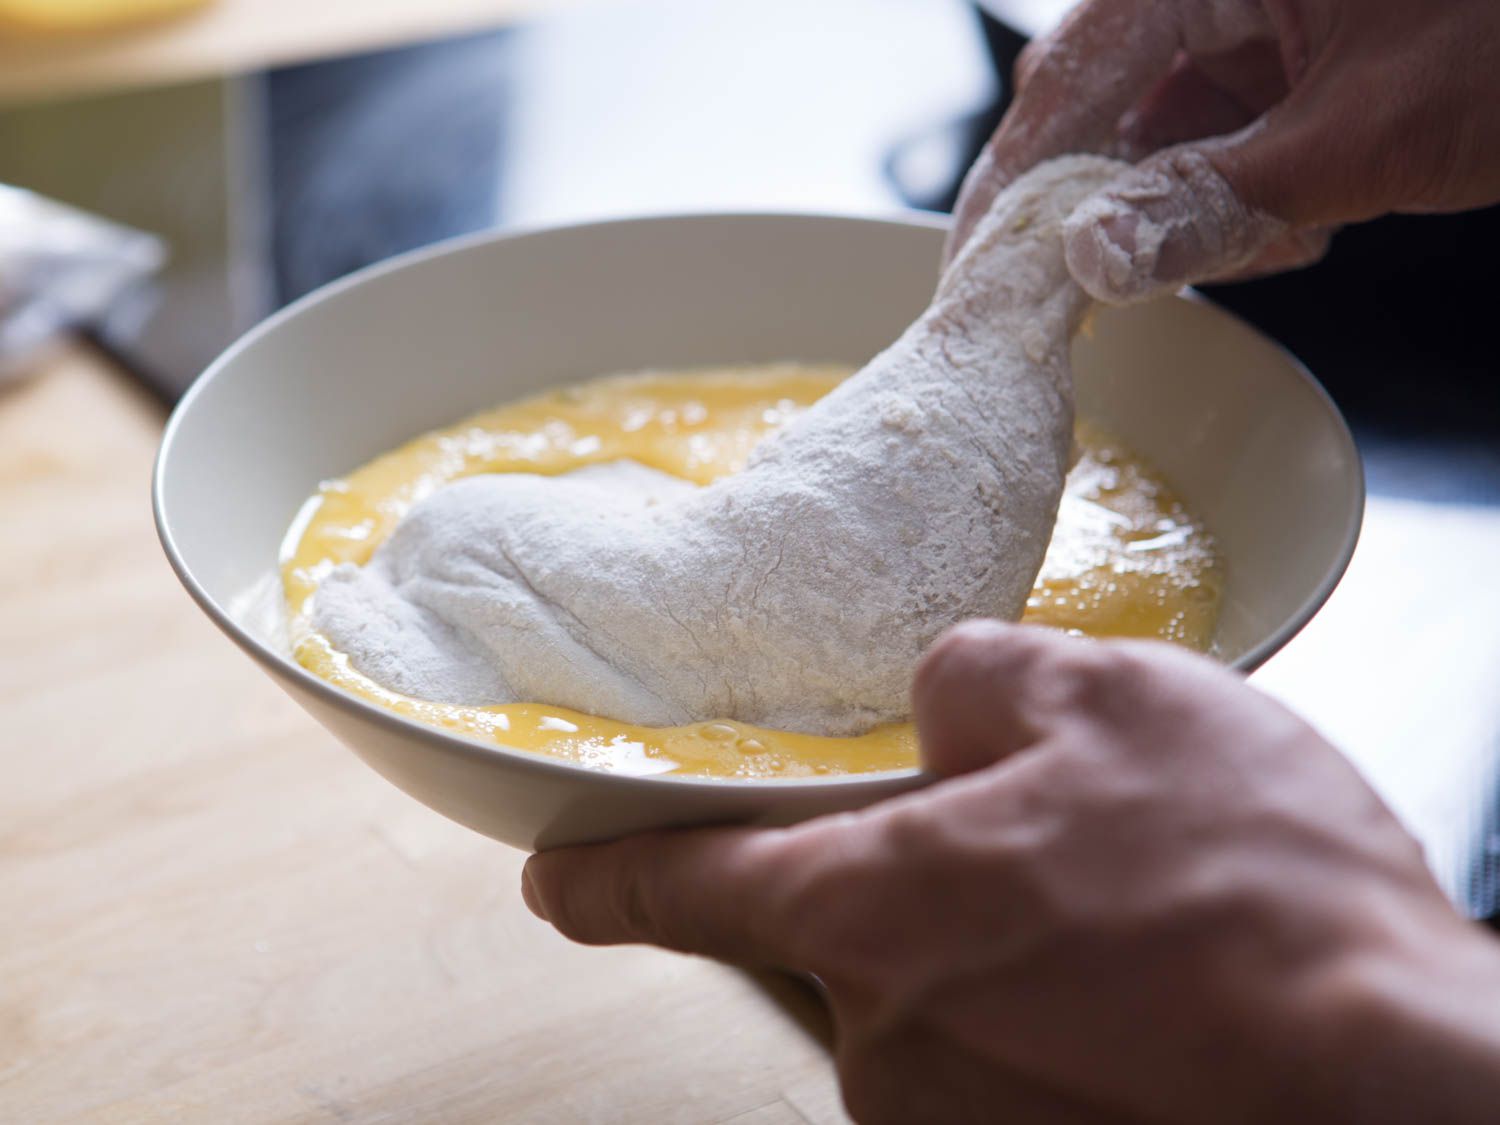 把撒了面粉的鸡腿浸在打好的鸡蛋里